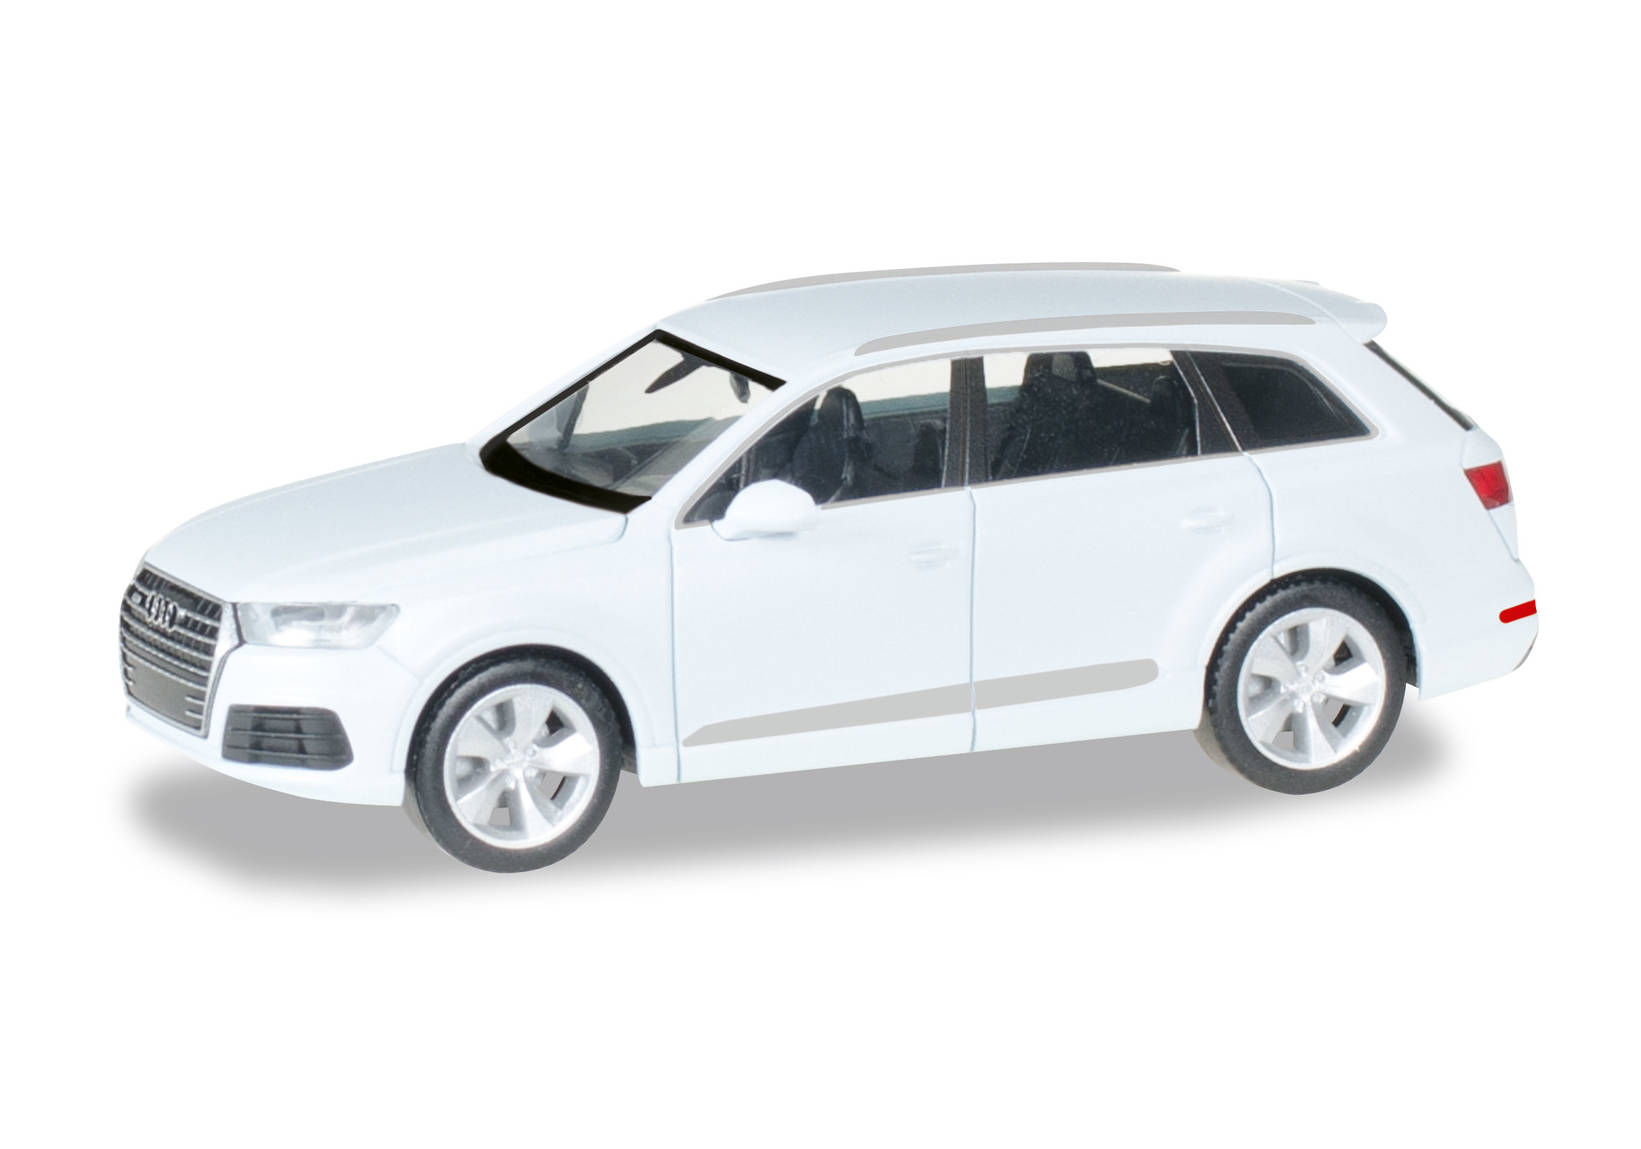 Audi Q7, gletscherweiß metallic